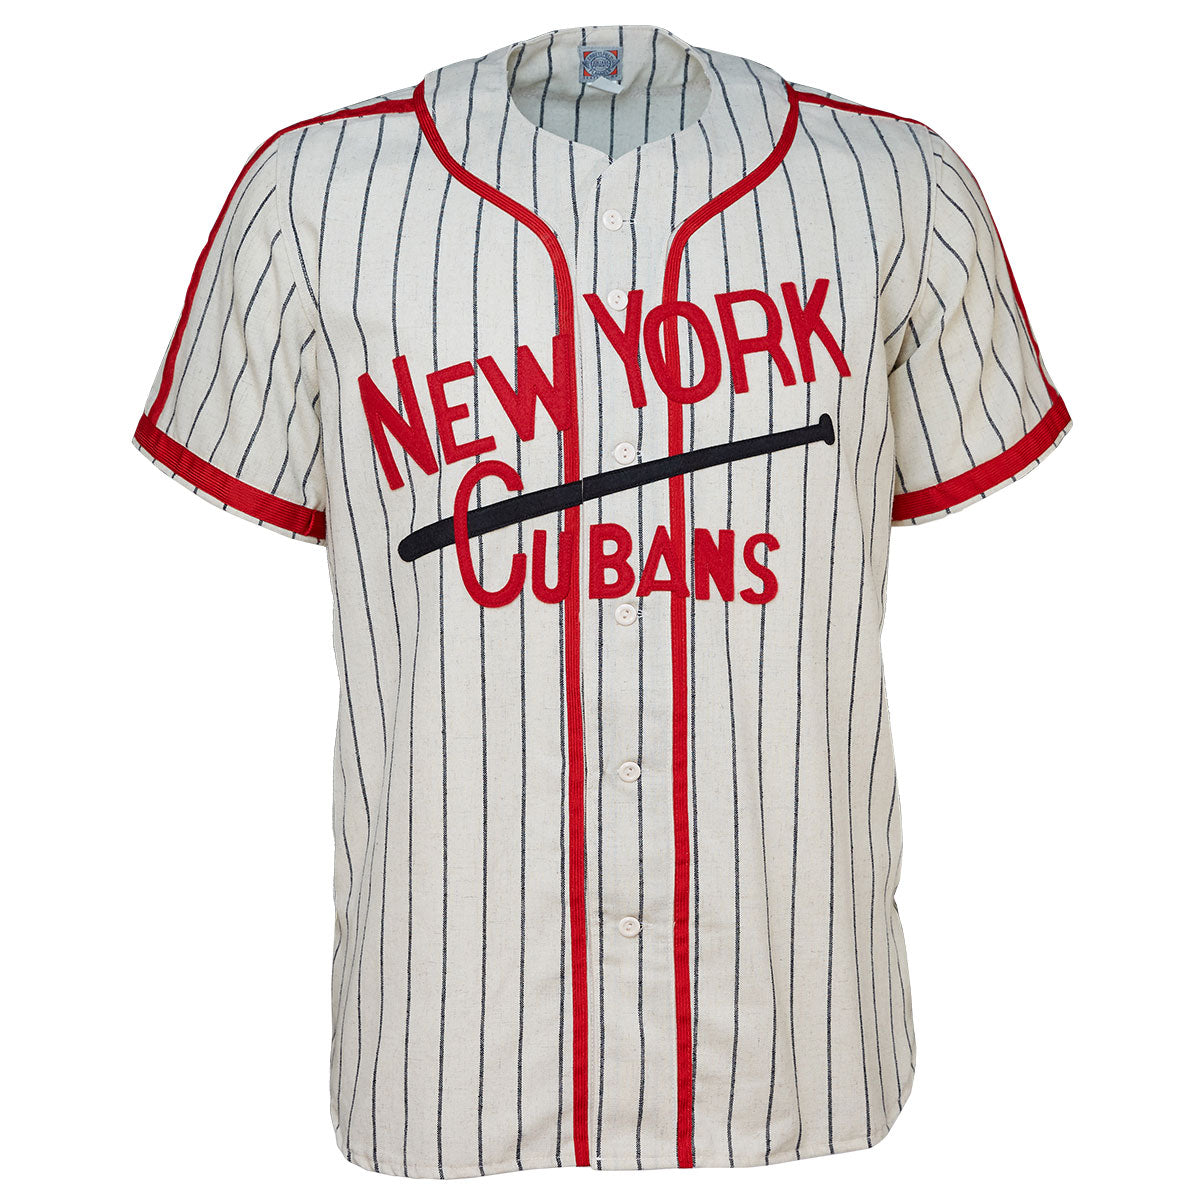 New York Cubans 1948 Home Jersey